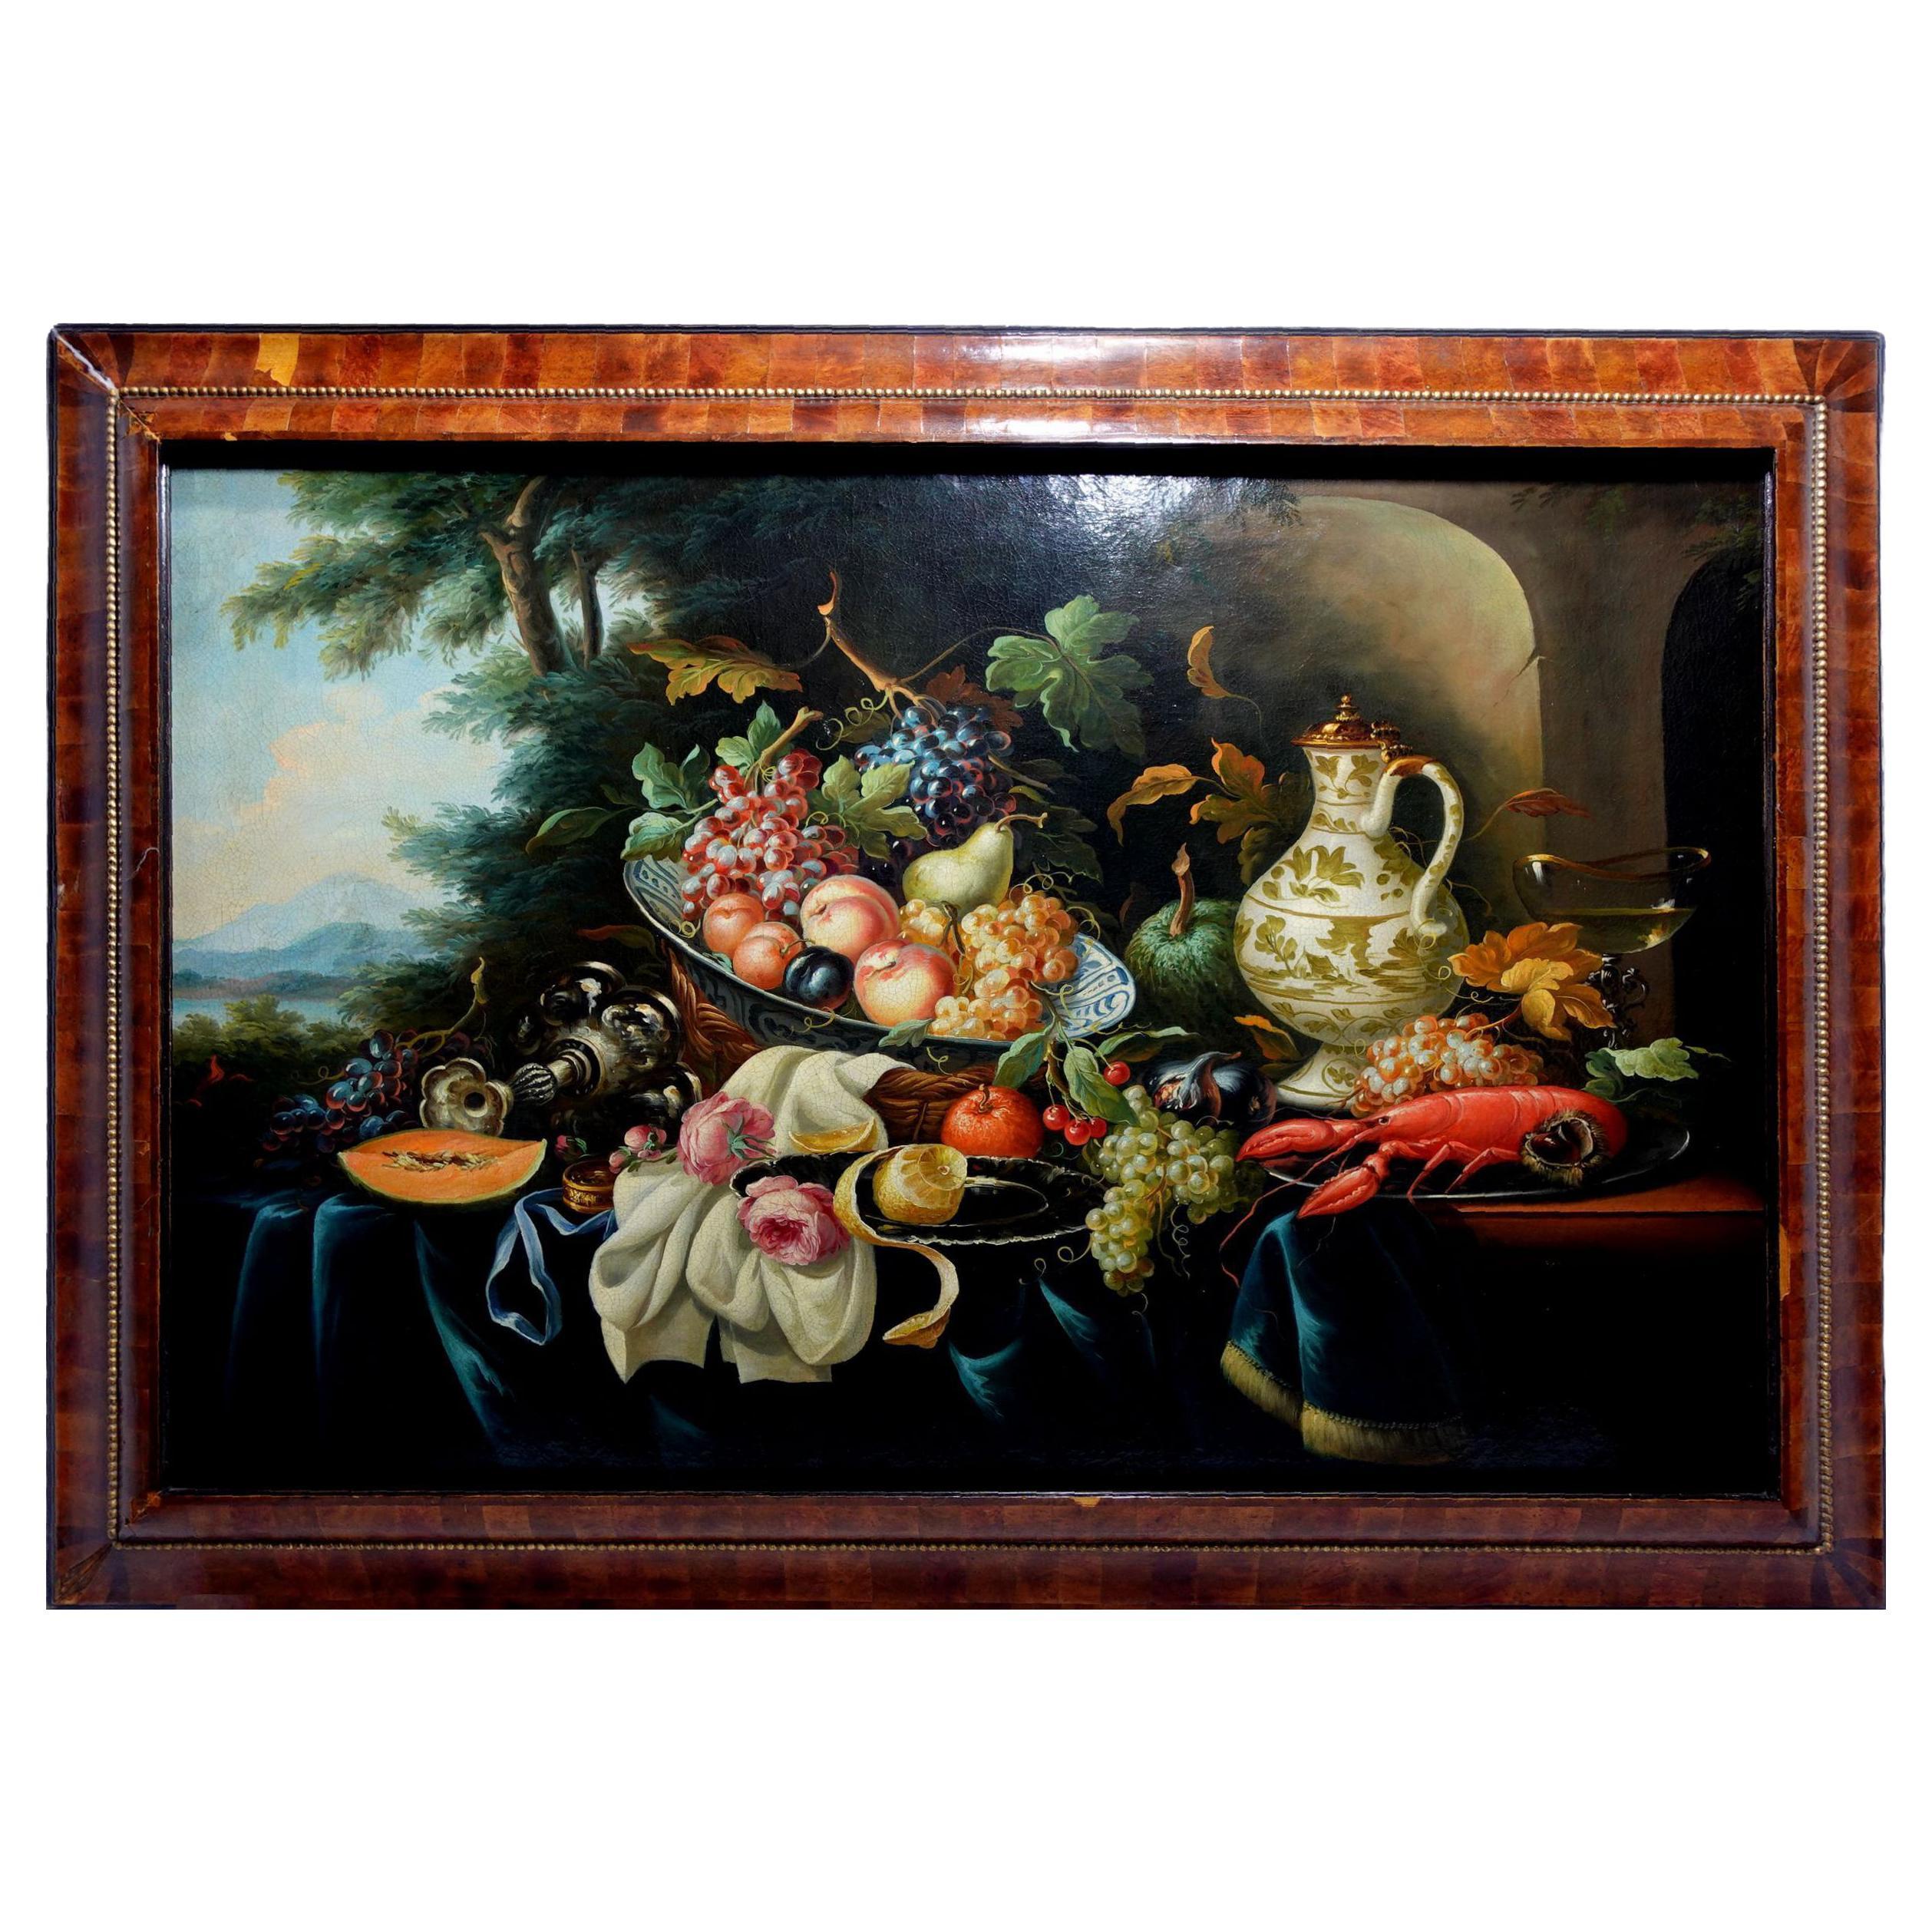 Grande peinture à l'huile "Nature morte" de l'école hollandaise, 18e siècle